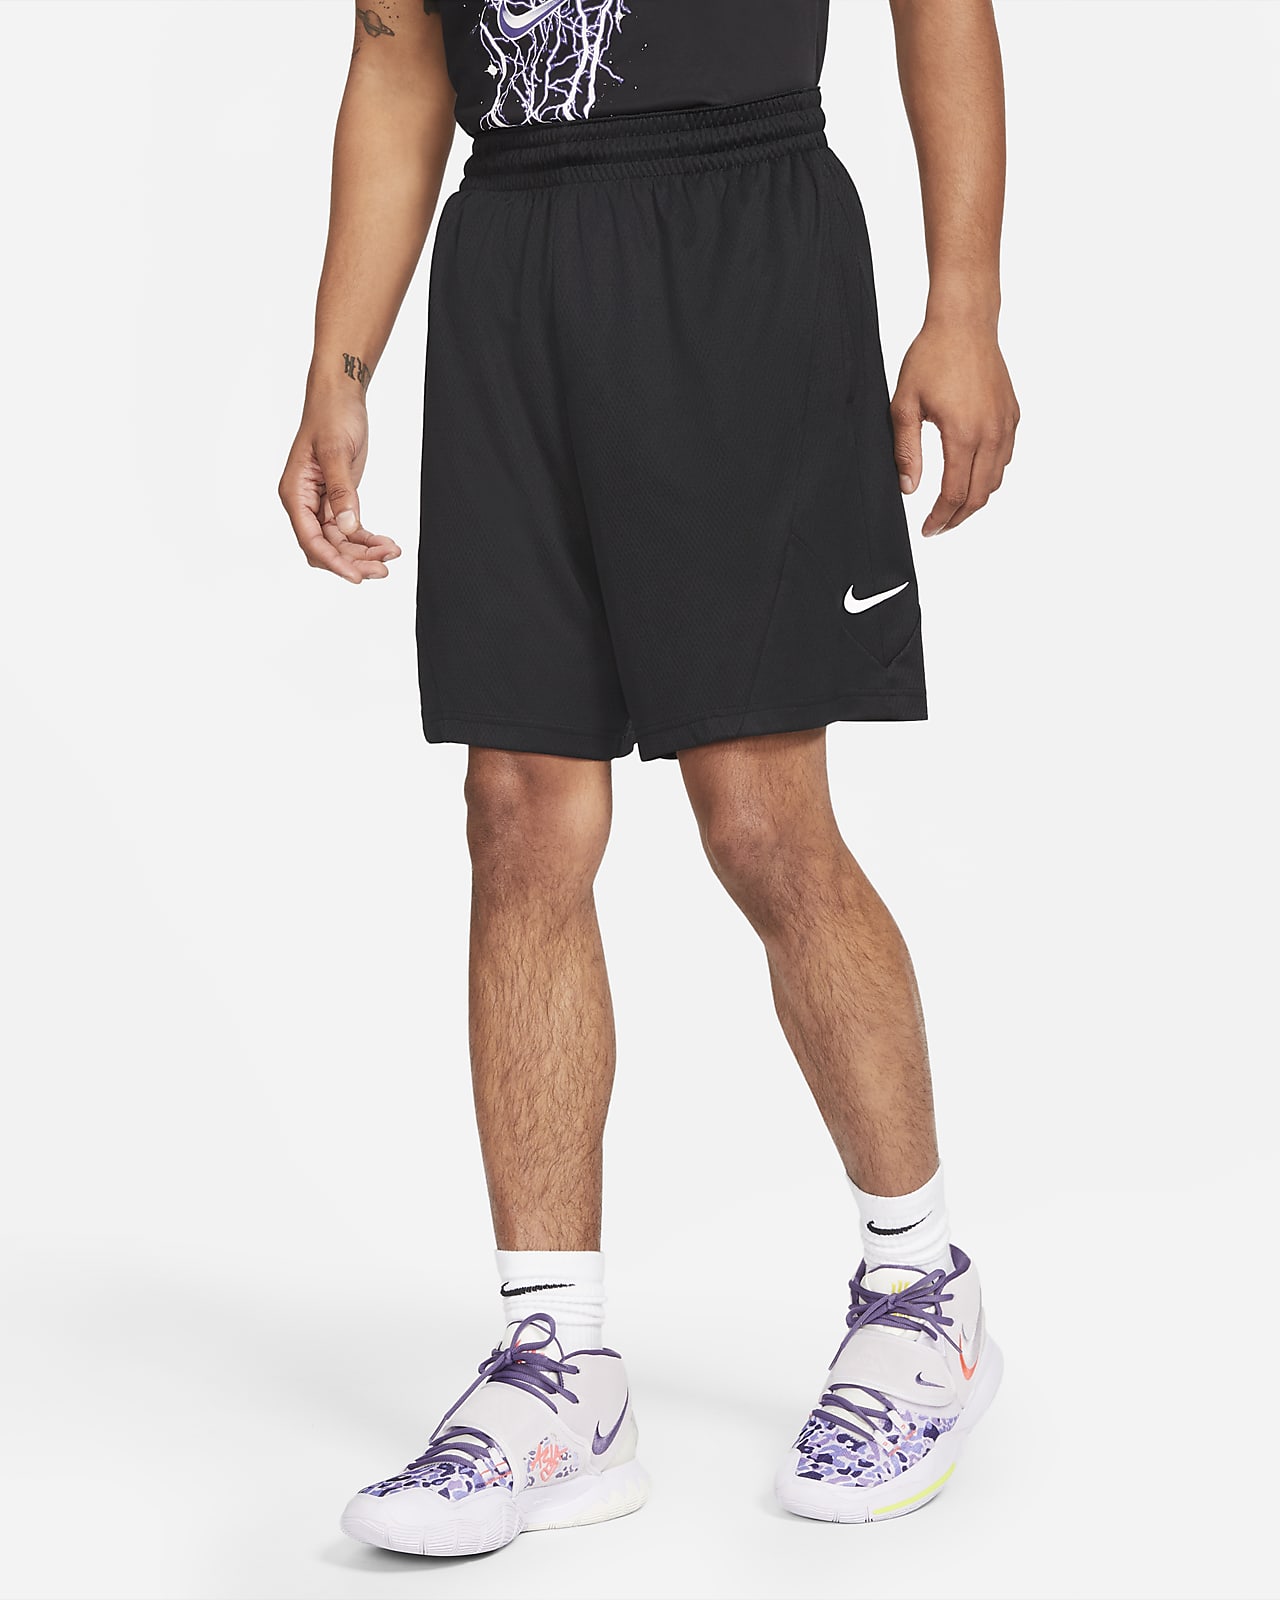 Nike Dri-FIT Rival Men's Basketball Shorts